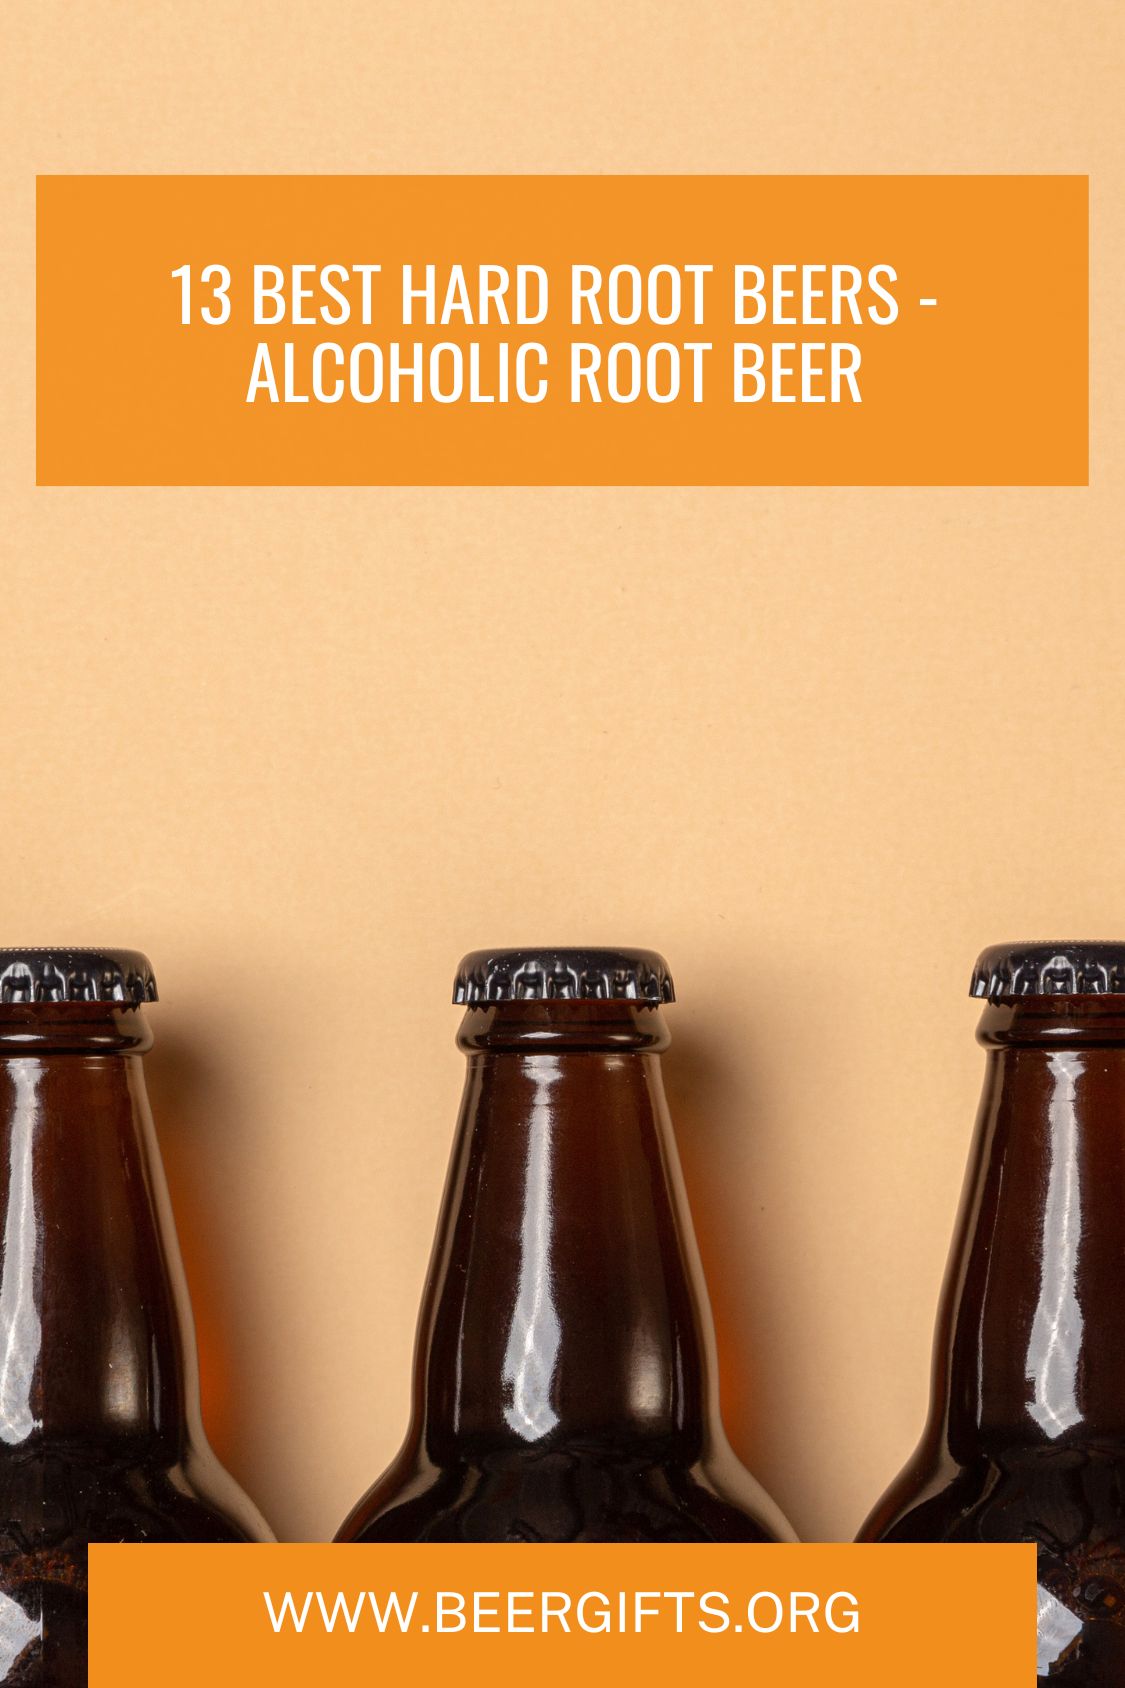 13 Best Hard Root Beers - Alcoholic Root Beer13